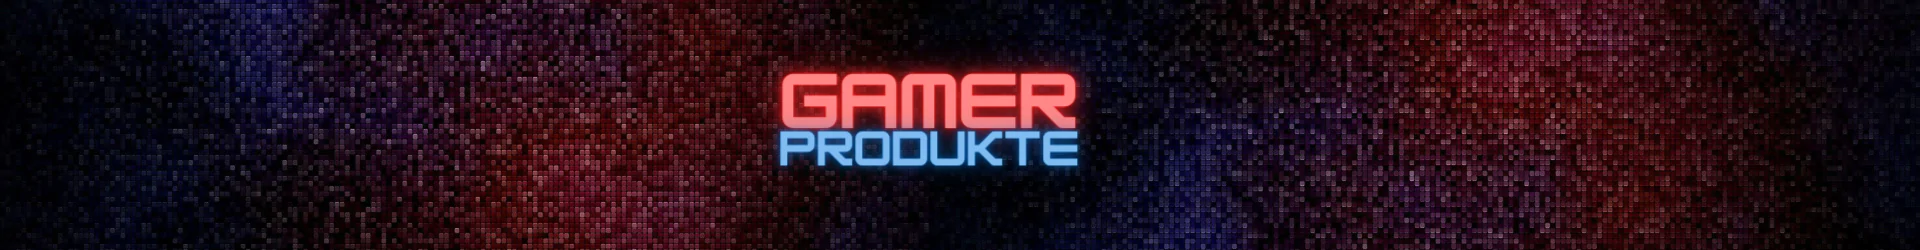 Gamer Producte banner